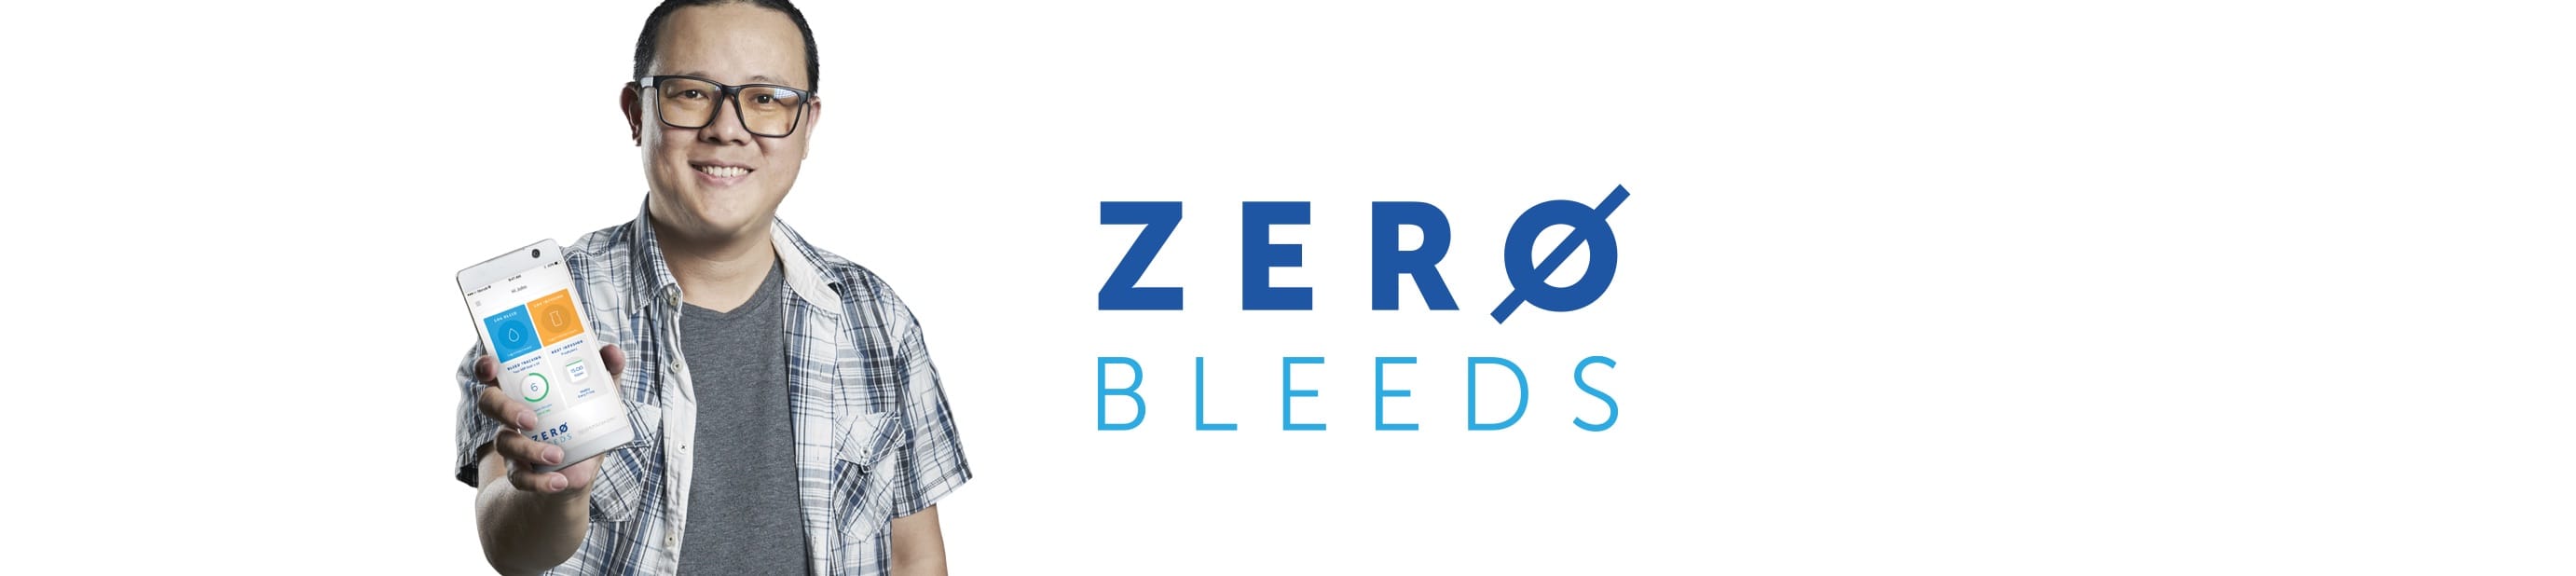 Welcome to Zero Bleeds